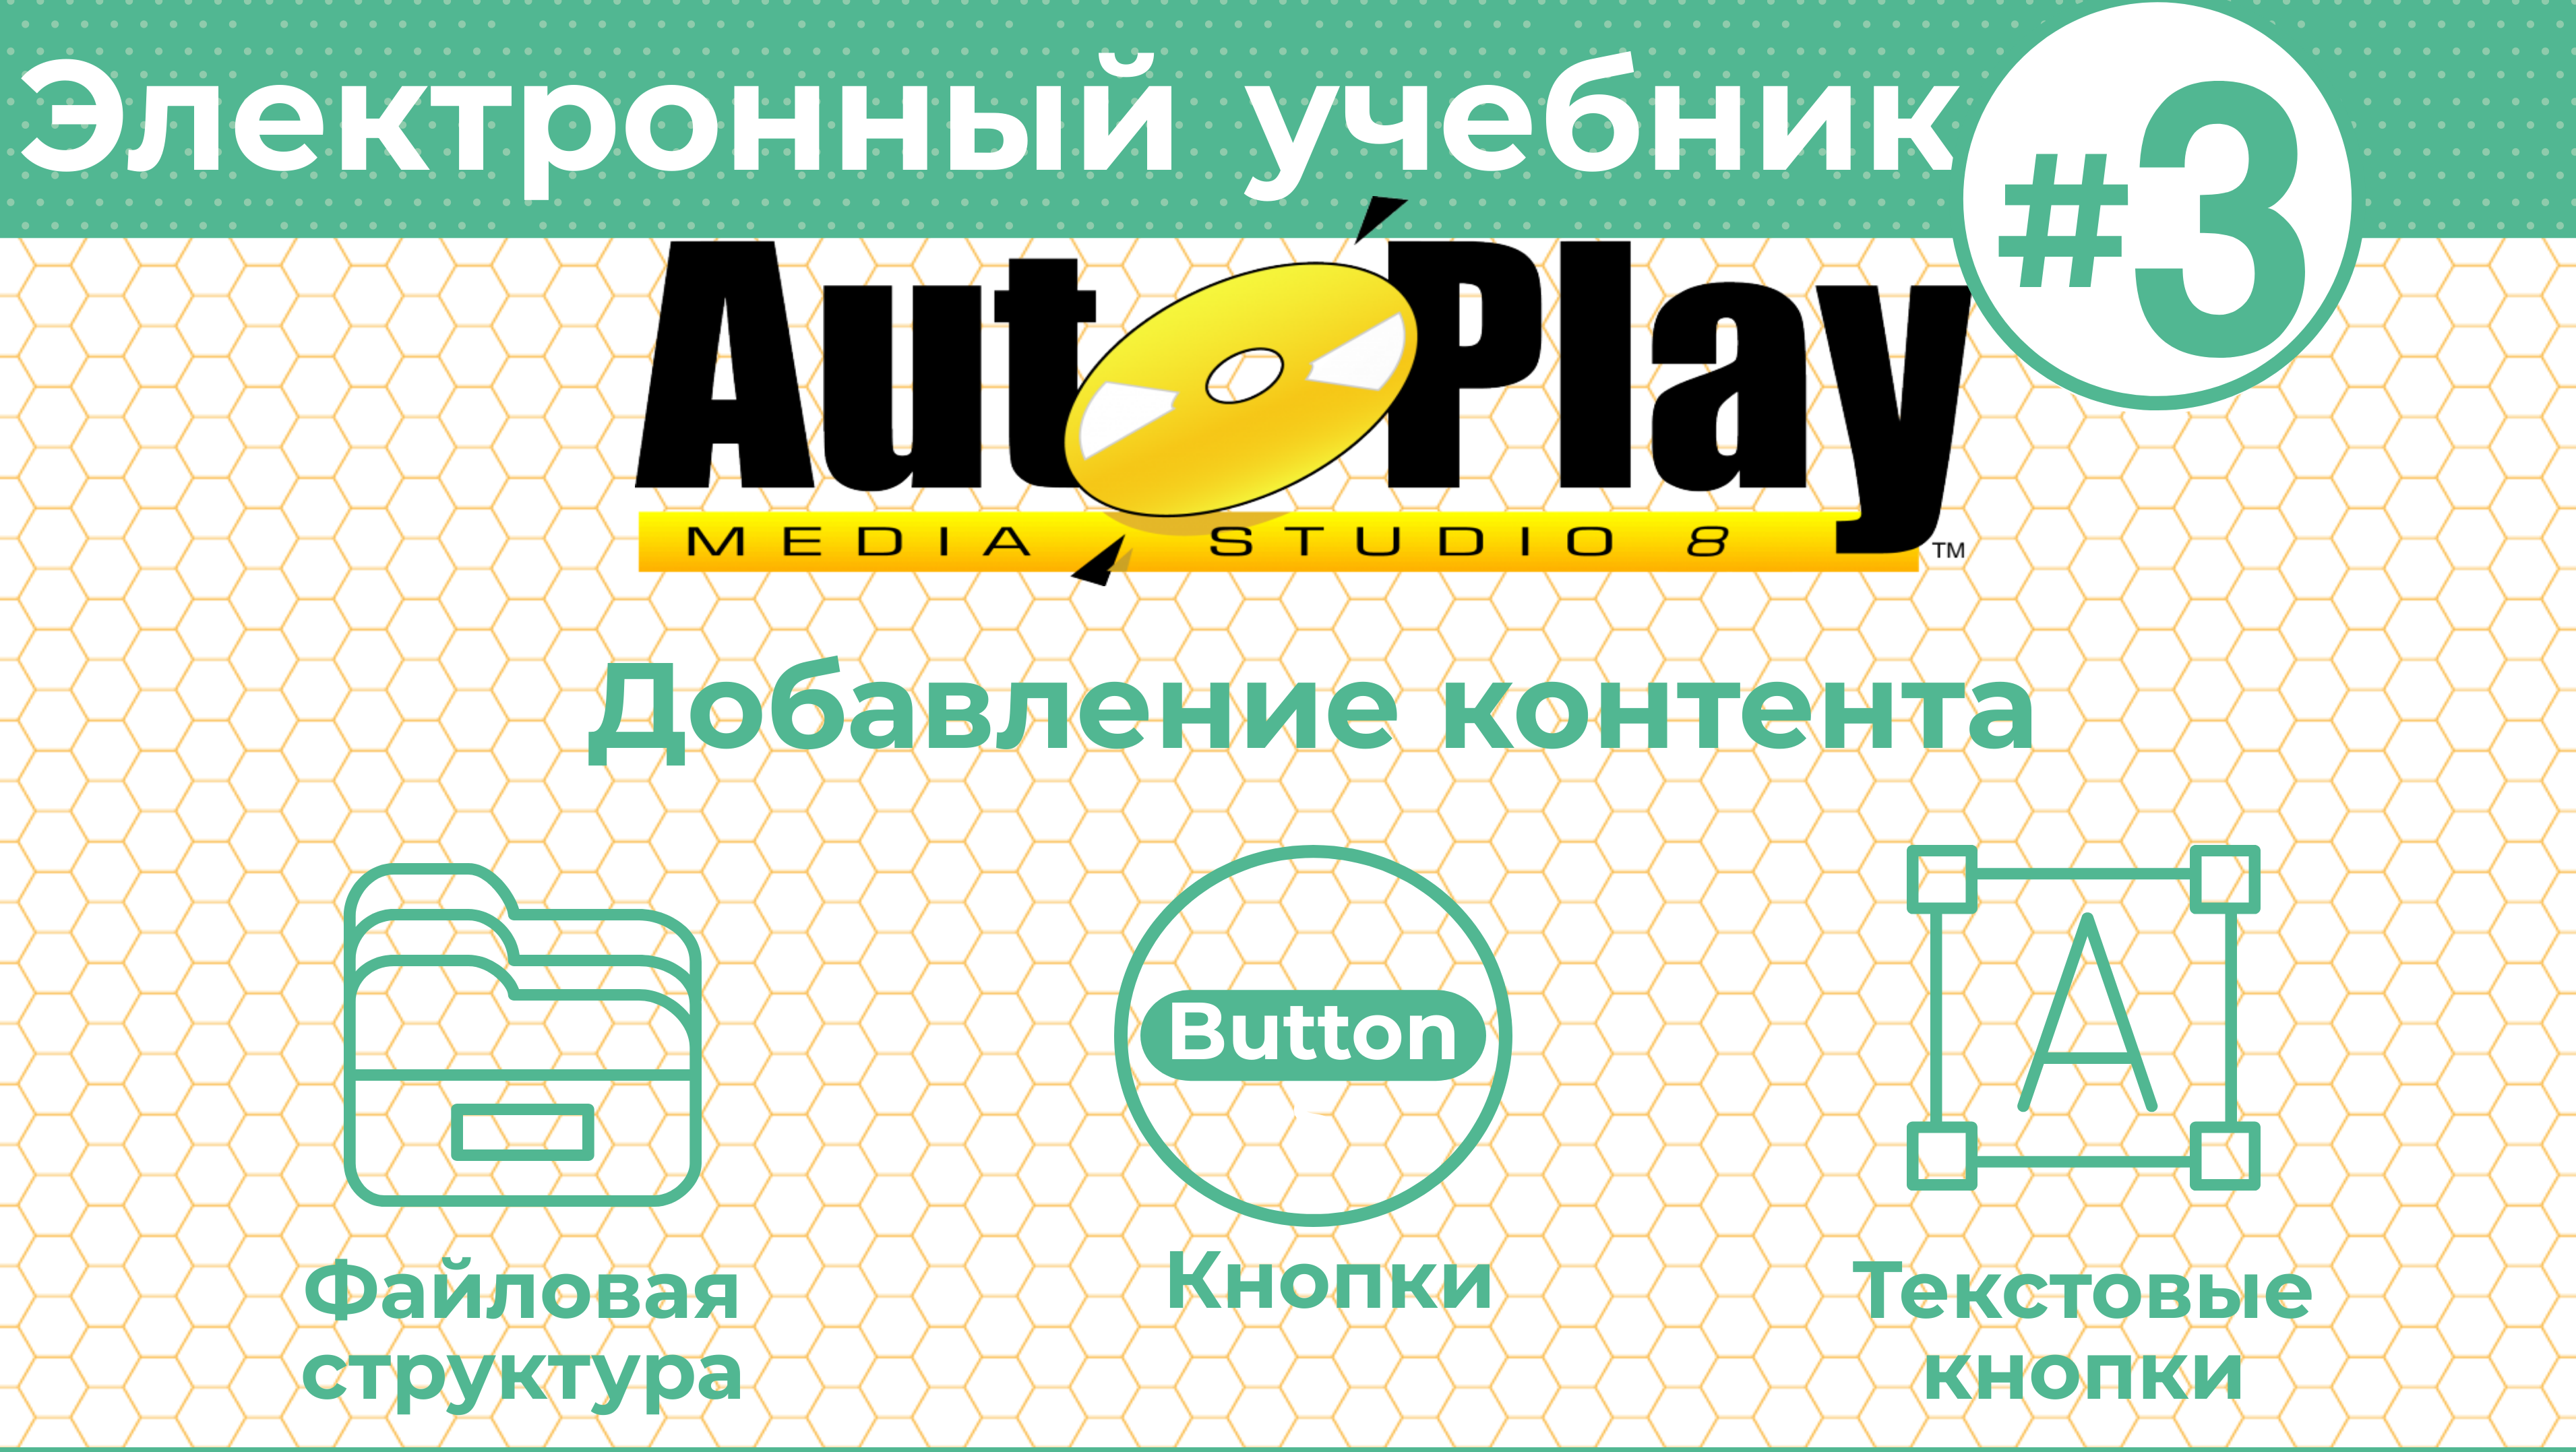 Как создать электронный учебник с AutoPlay Media Studio #3